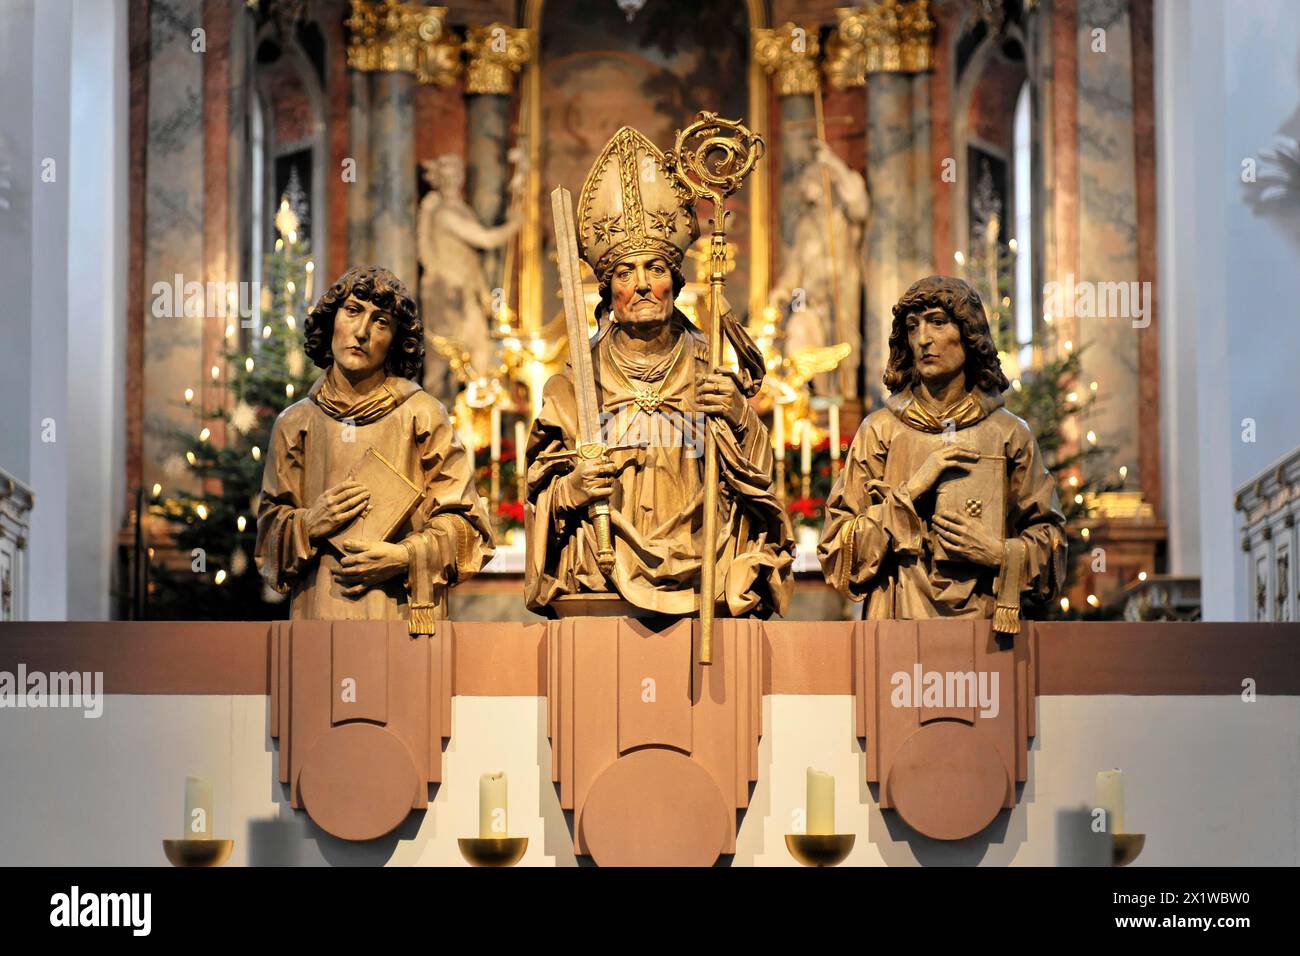 Würzburg, drei Skulpturen von Heiligen auf einem Altar mit Kerzen und einem Tannenbaum im Hintergrund, Würzburg, Unterfranken, Bayern Stockfoto